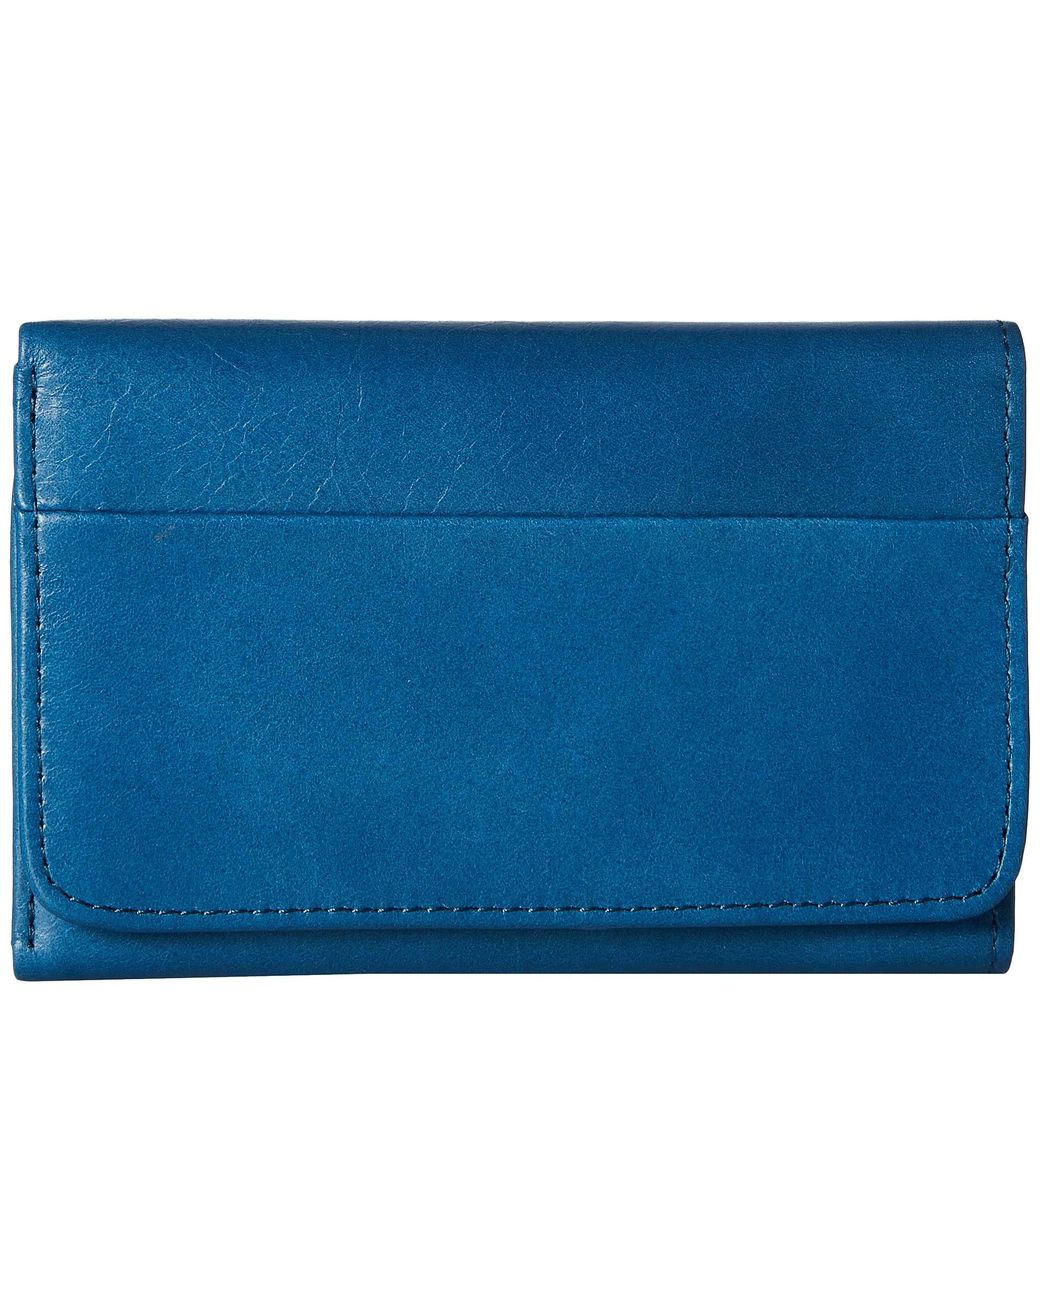 Wallet Clutch w/ Tabs in Electric Blue – Mint Julep